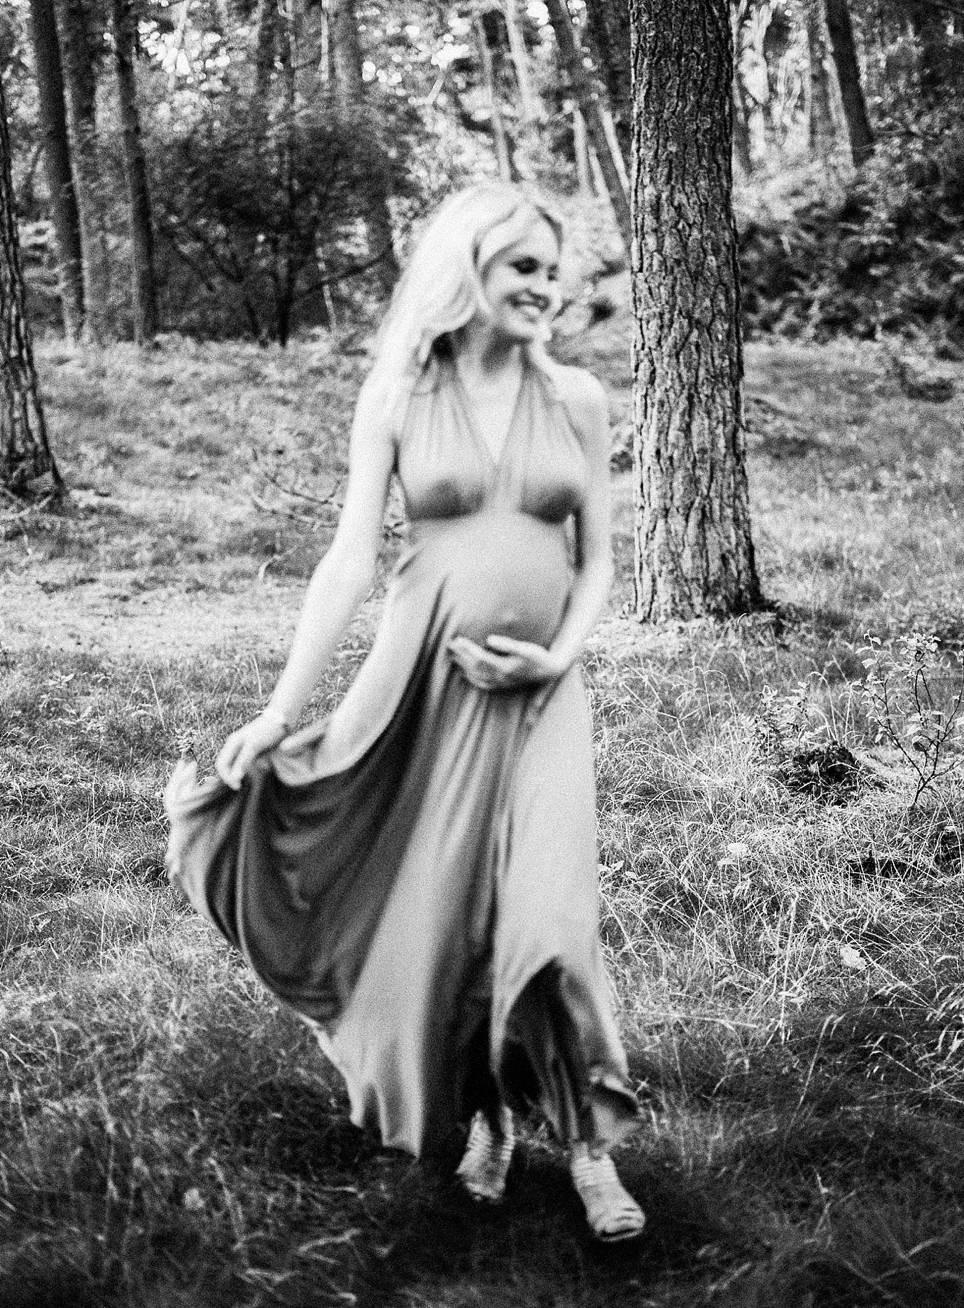 Amanda-Drost-zwangerschapsshoot-babybump_0007.jpg